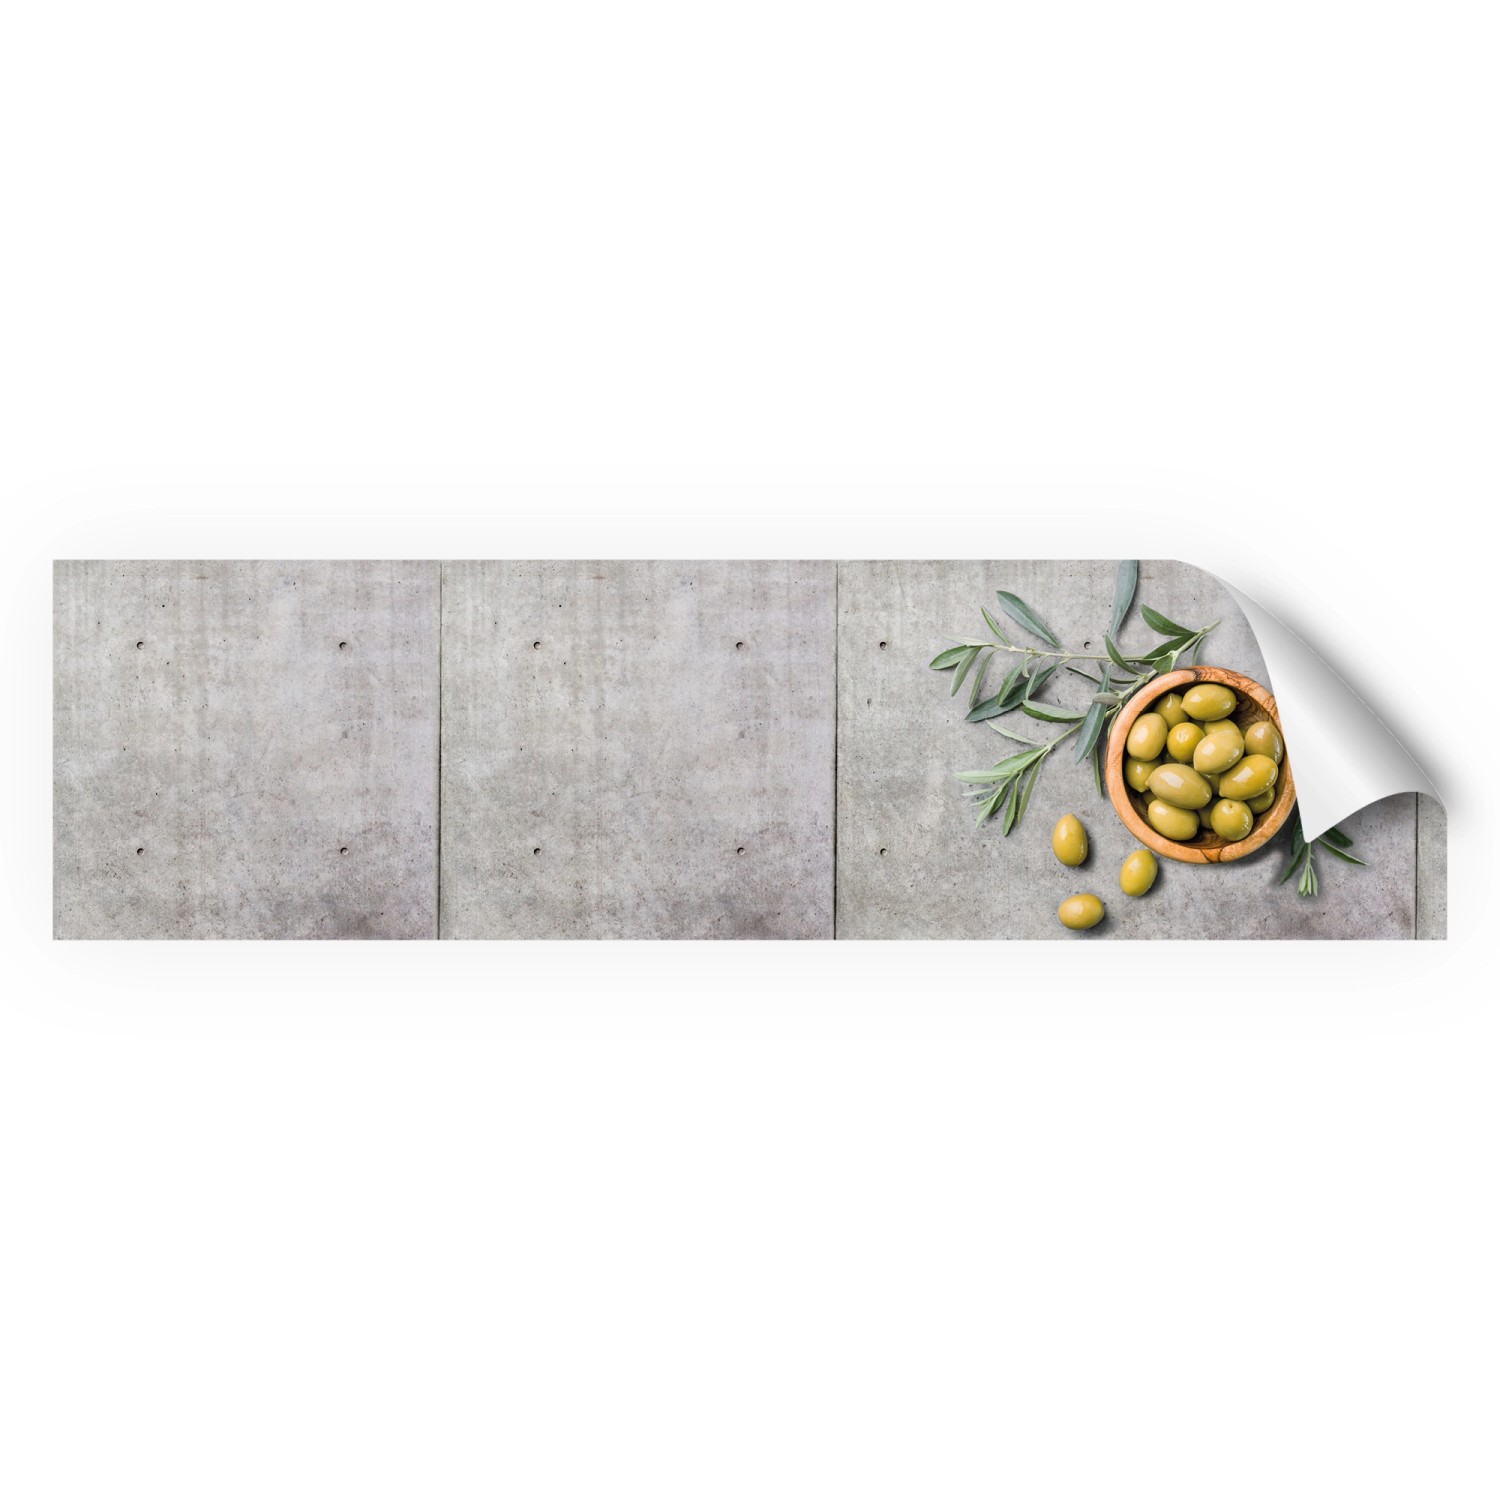 Myspotti Küchenrückwandfolie Olive and Concrete Selbstklebend 220 cm x 60 cm